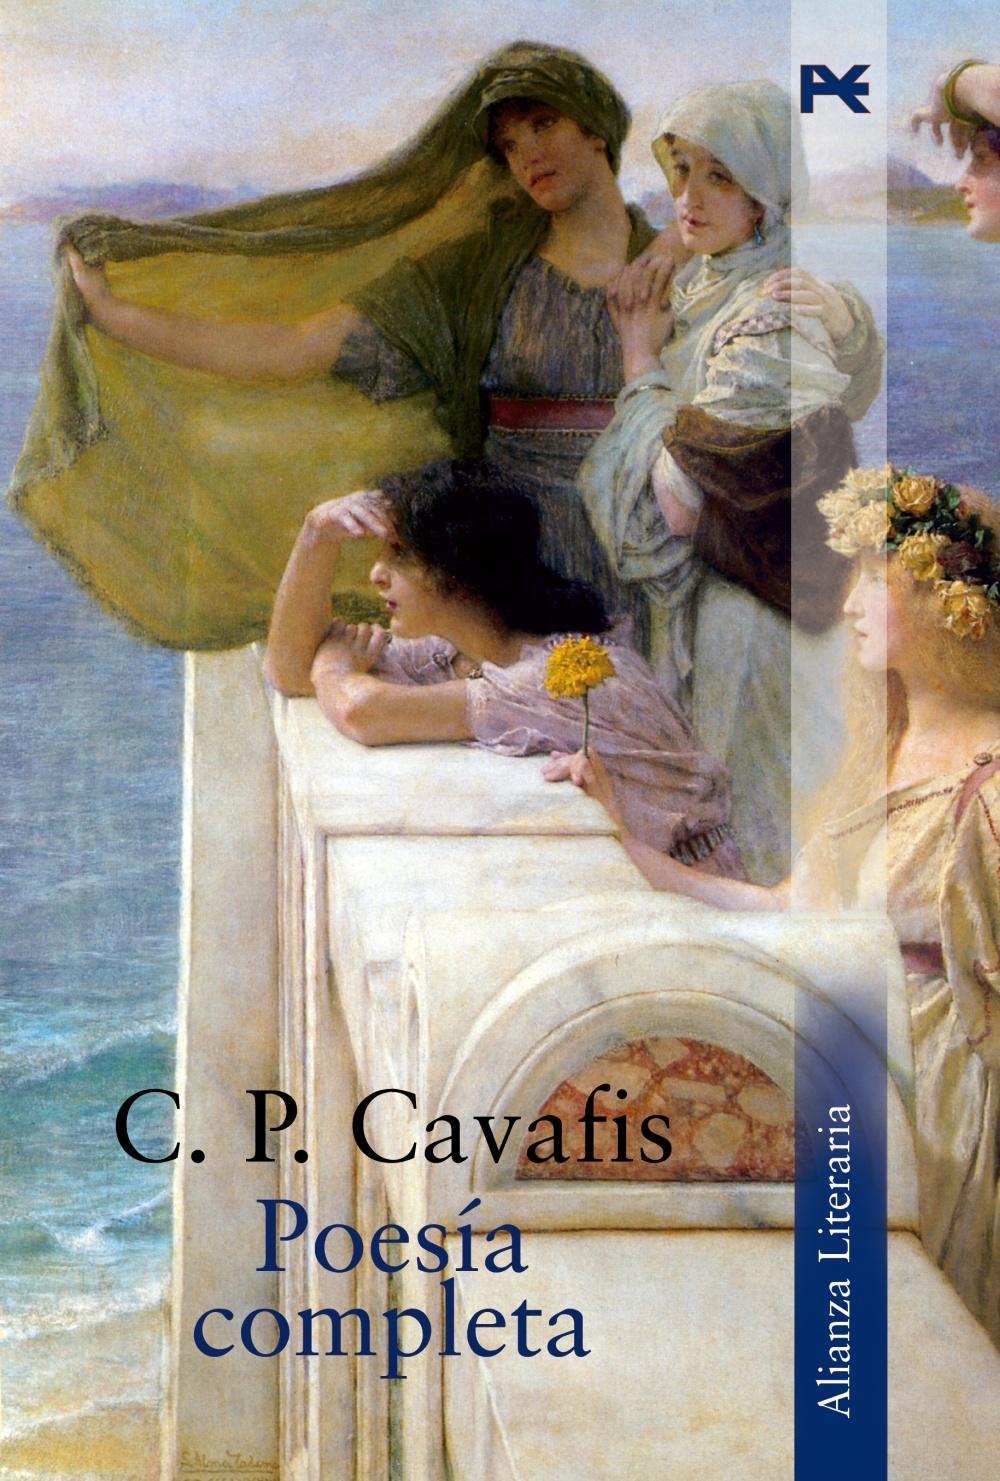 Poesía completa "(C. P. Cavafis)". 